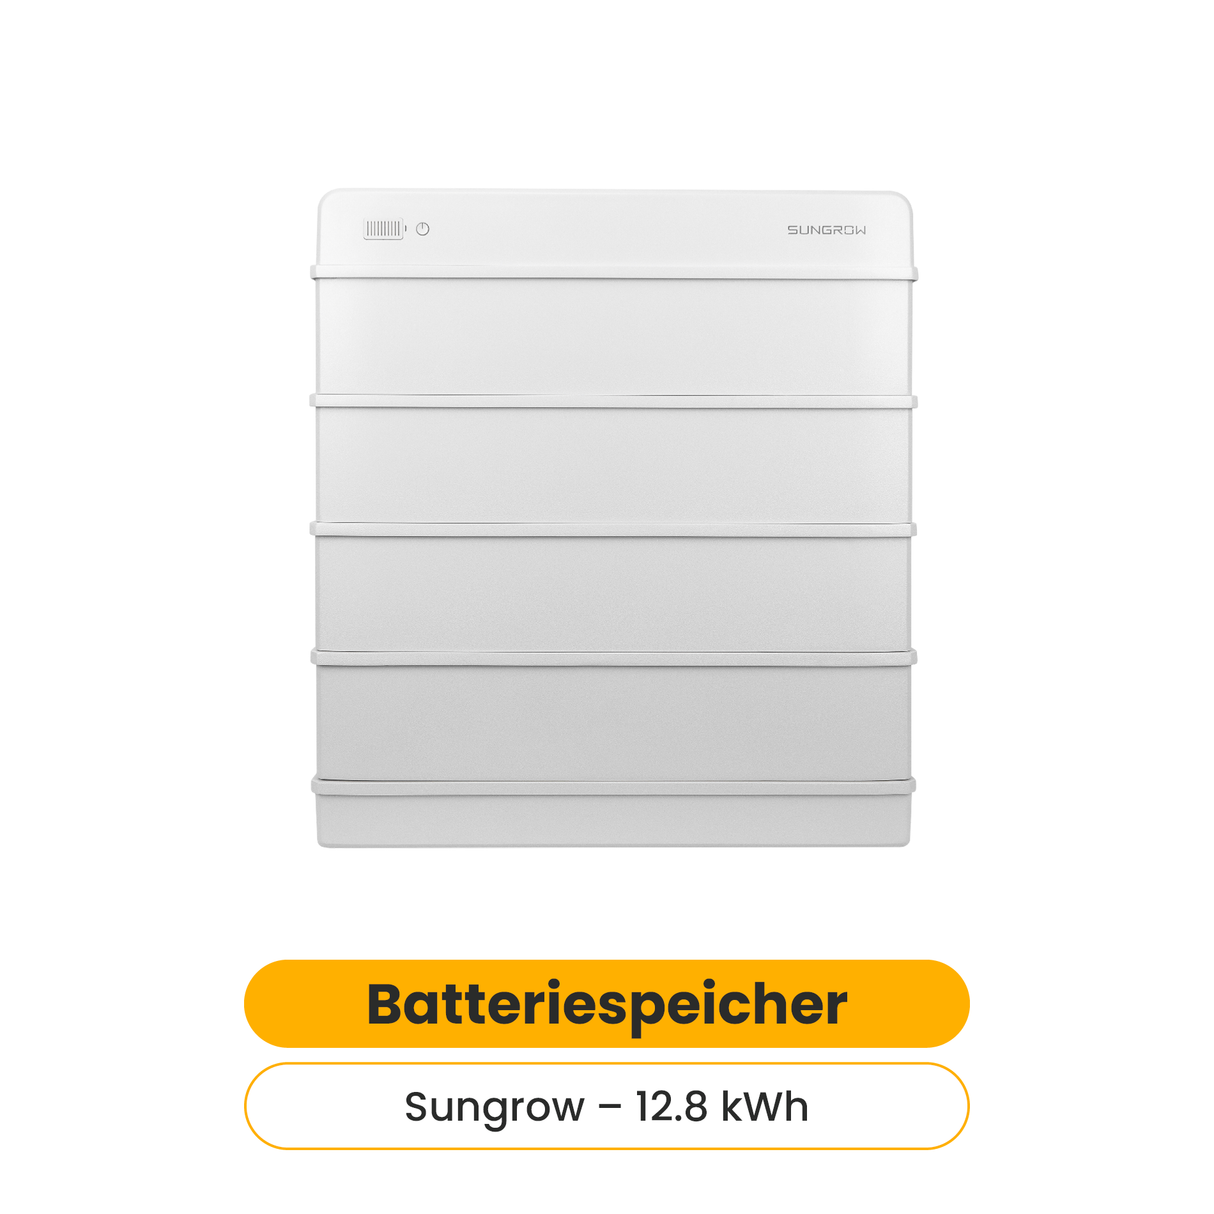 Sungrow Batteriespeicher SBR128 12.8 kWh